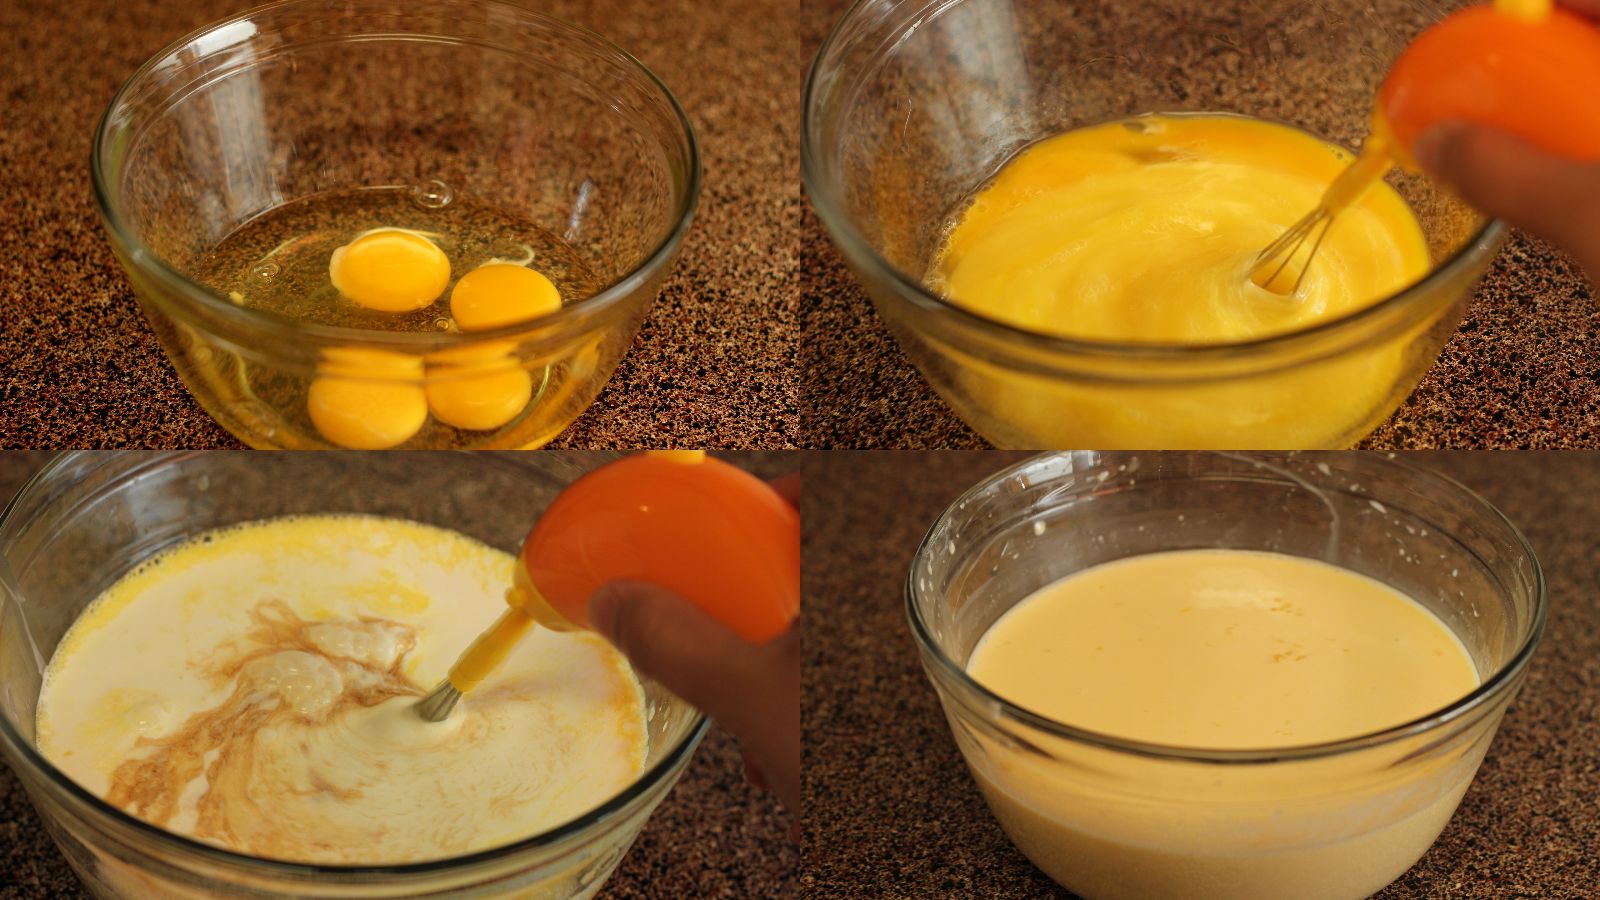 Phần cốt bánh được làm từ trứng nên có vị béo ngậy